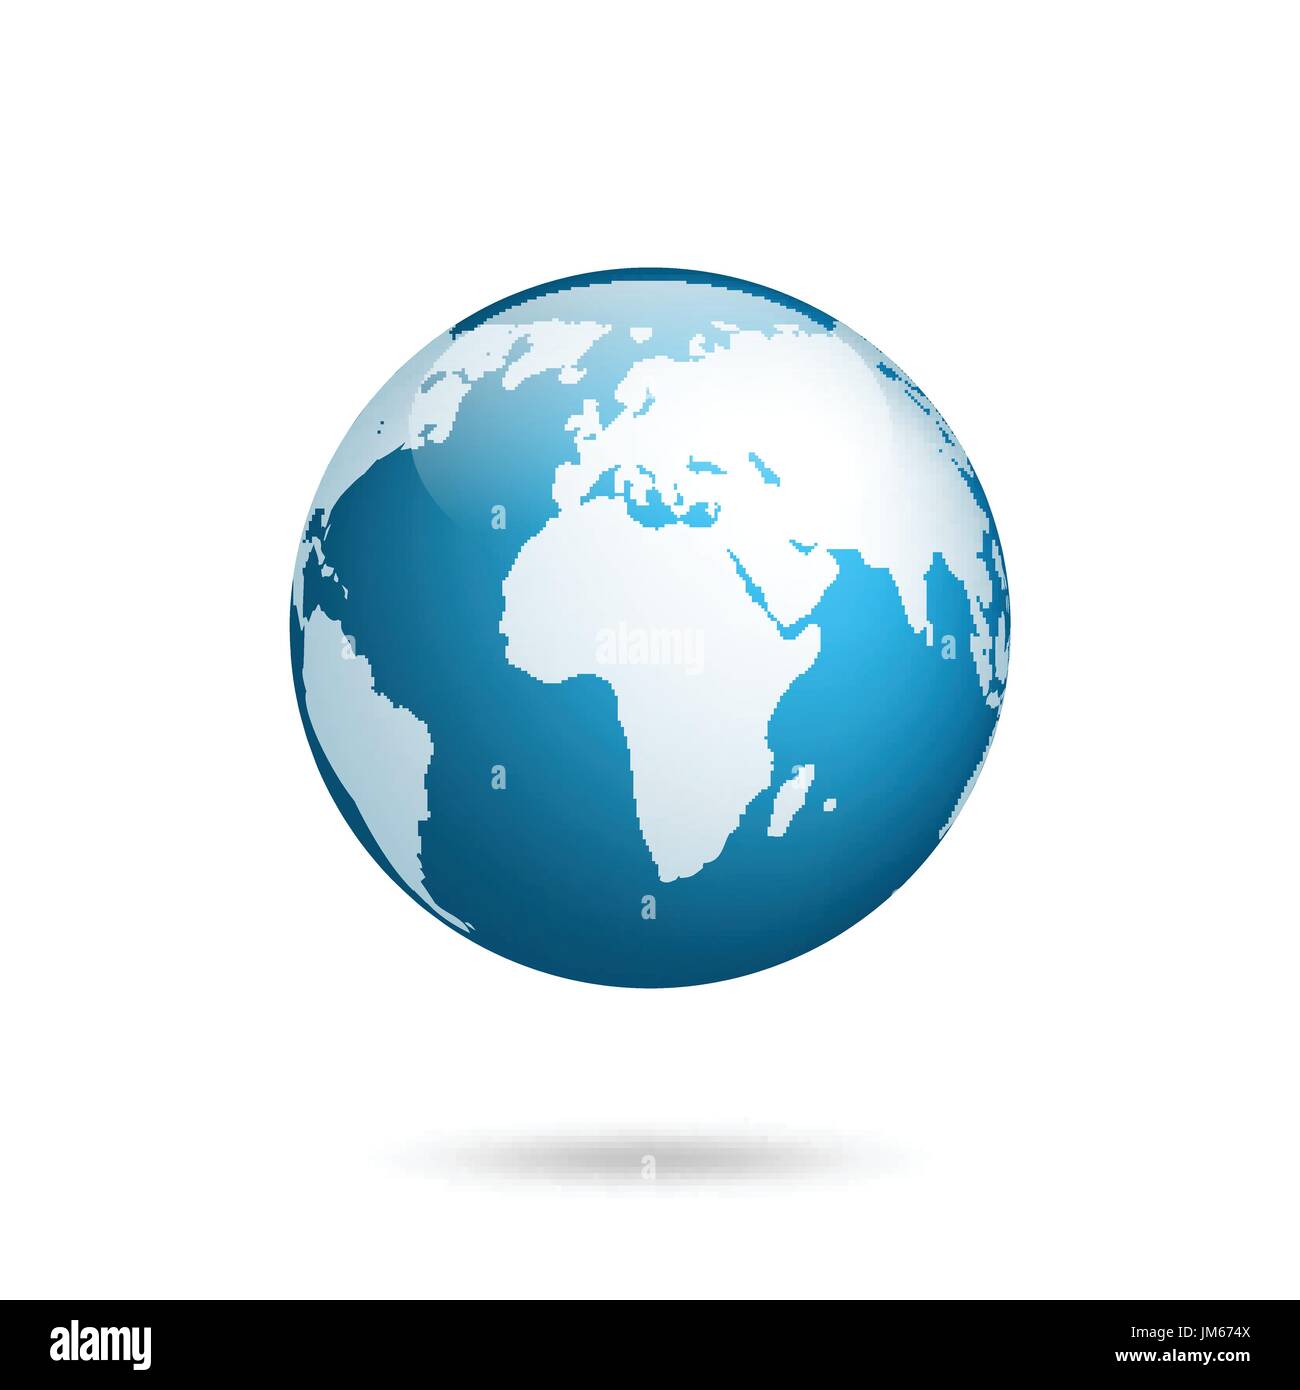 Erdkugel. Welt Karte gesetzt. Planeten mit Kontinenten. Afrika Asien, Australien, Europa, Nordamerika und Südamerika. Stock Vektor